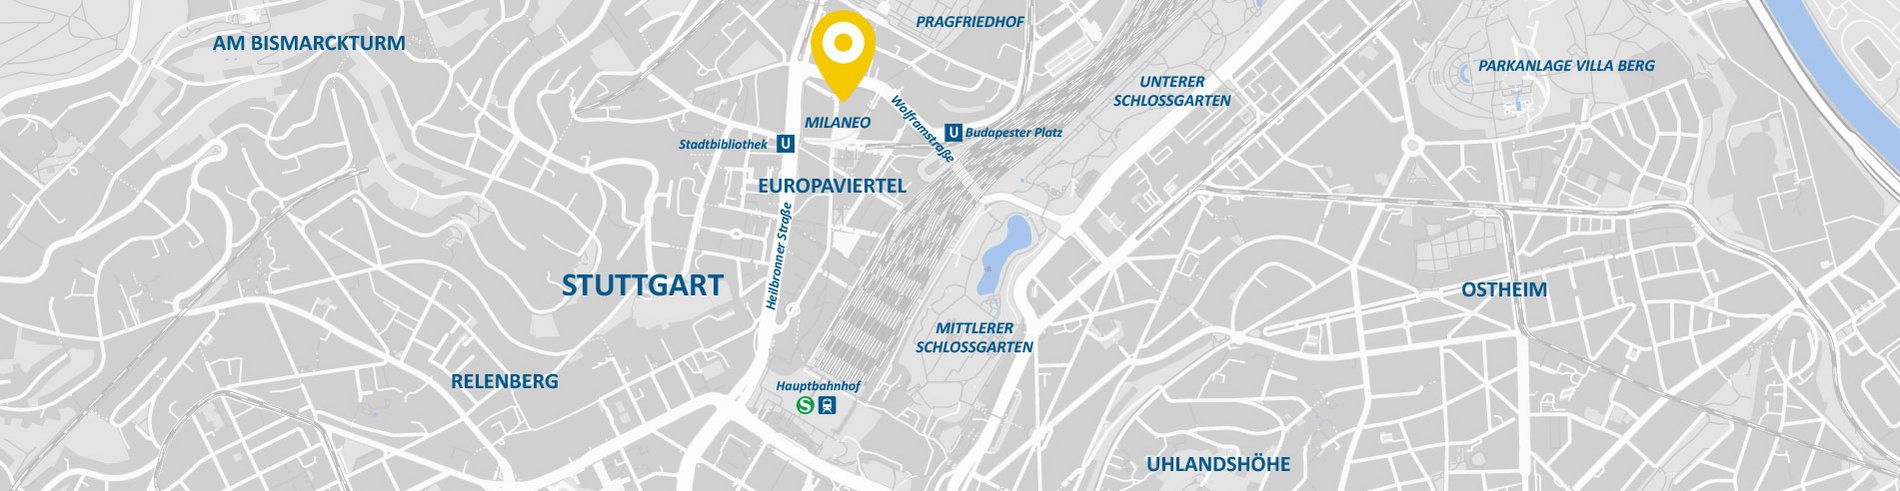 Stadtkarte AllDent Stuttgart 